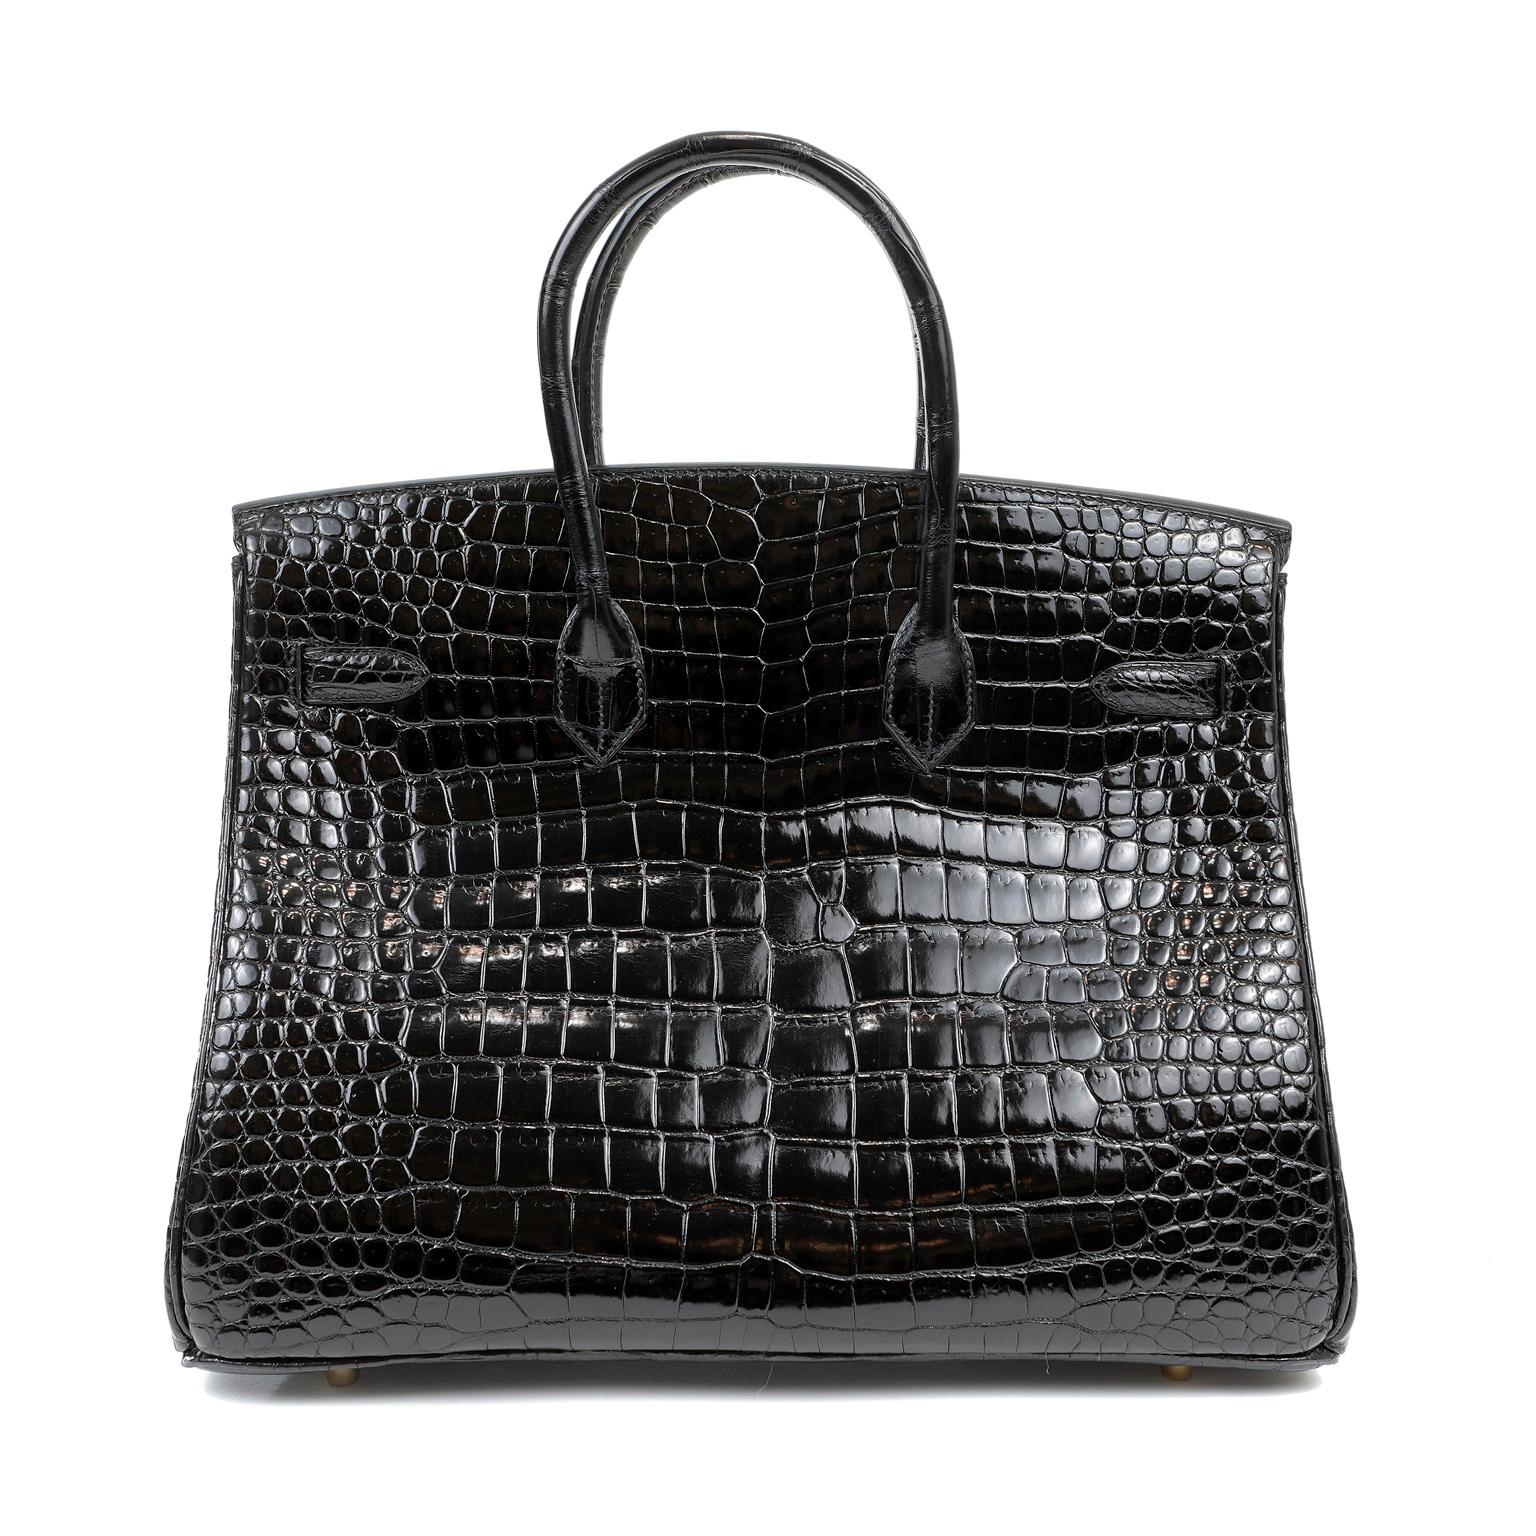 Diese authentische Hermès Black Crocodile 35 cm Birkin ist in neuwertigem Zustand mit Schutzfolie intakt auf die Hardware.   Hermès-Taschen gelten weltweit als der ultimative Luxusartikel.  Handgenäht von qualifizierten Handwerkern, sind Wartelisten